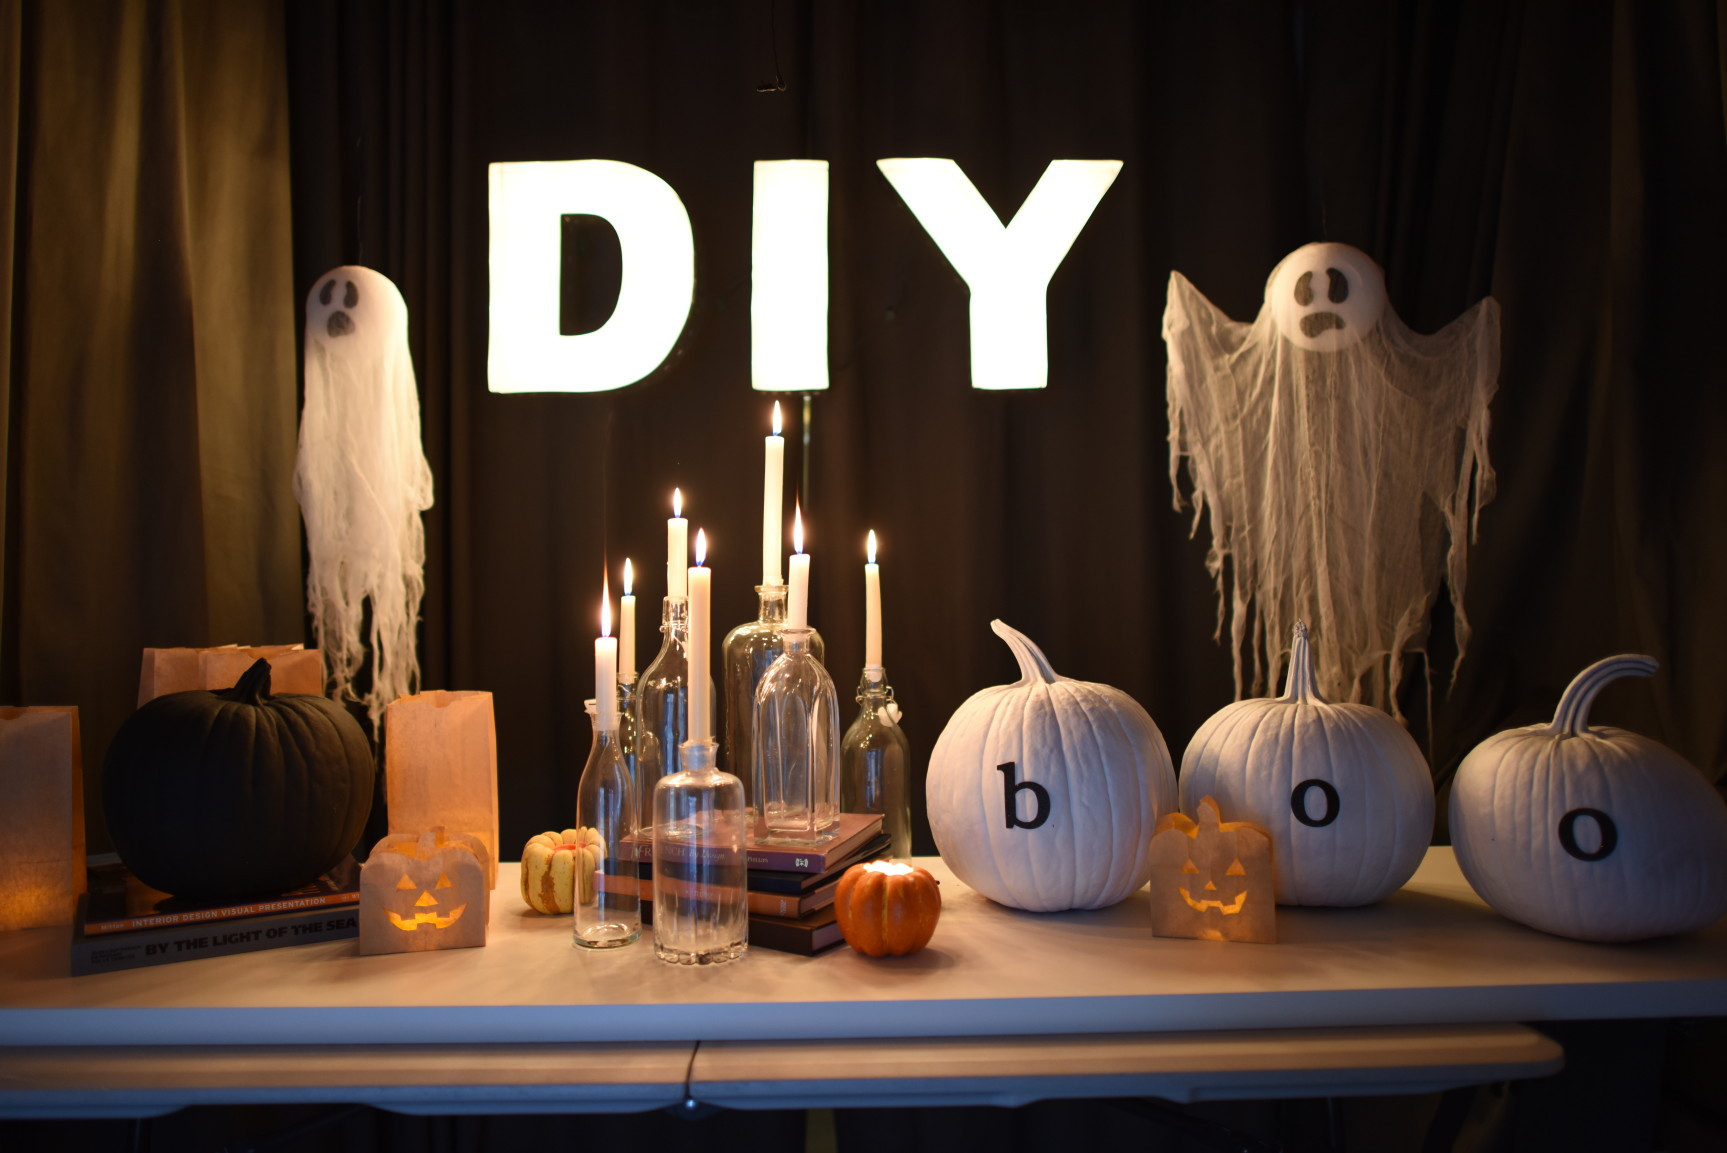 DIY Halloween Party Decor
 5 Easy Creepy Yet Classy Halloween Party Decorations [on a